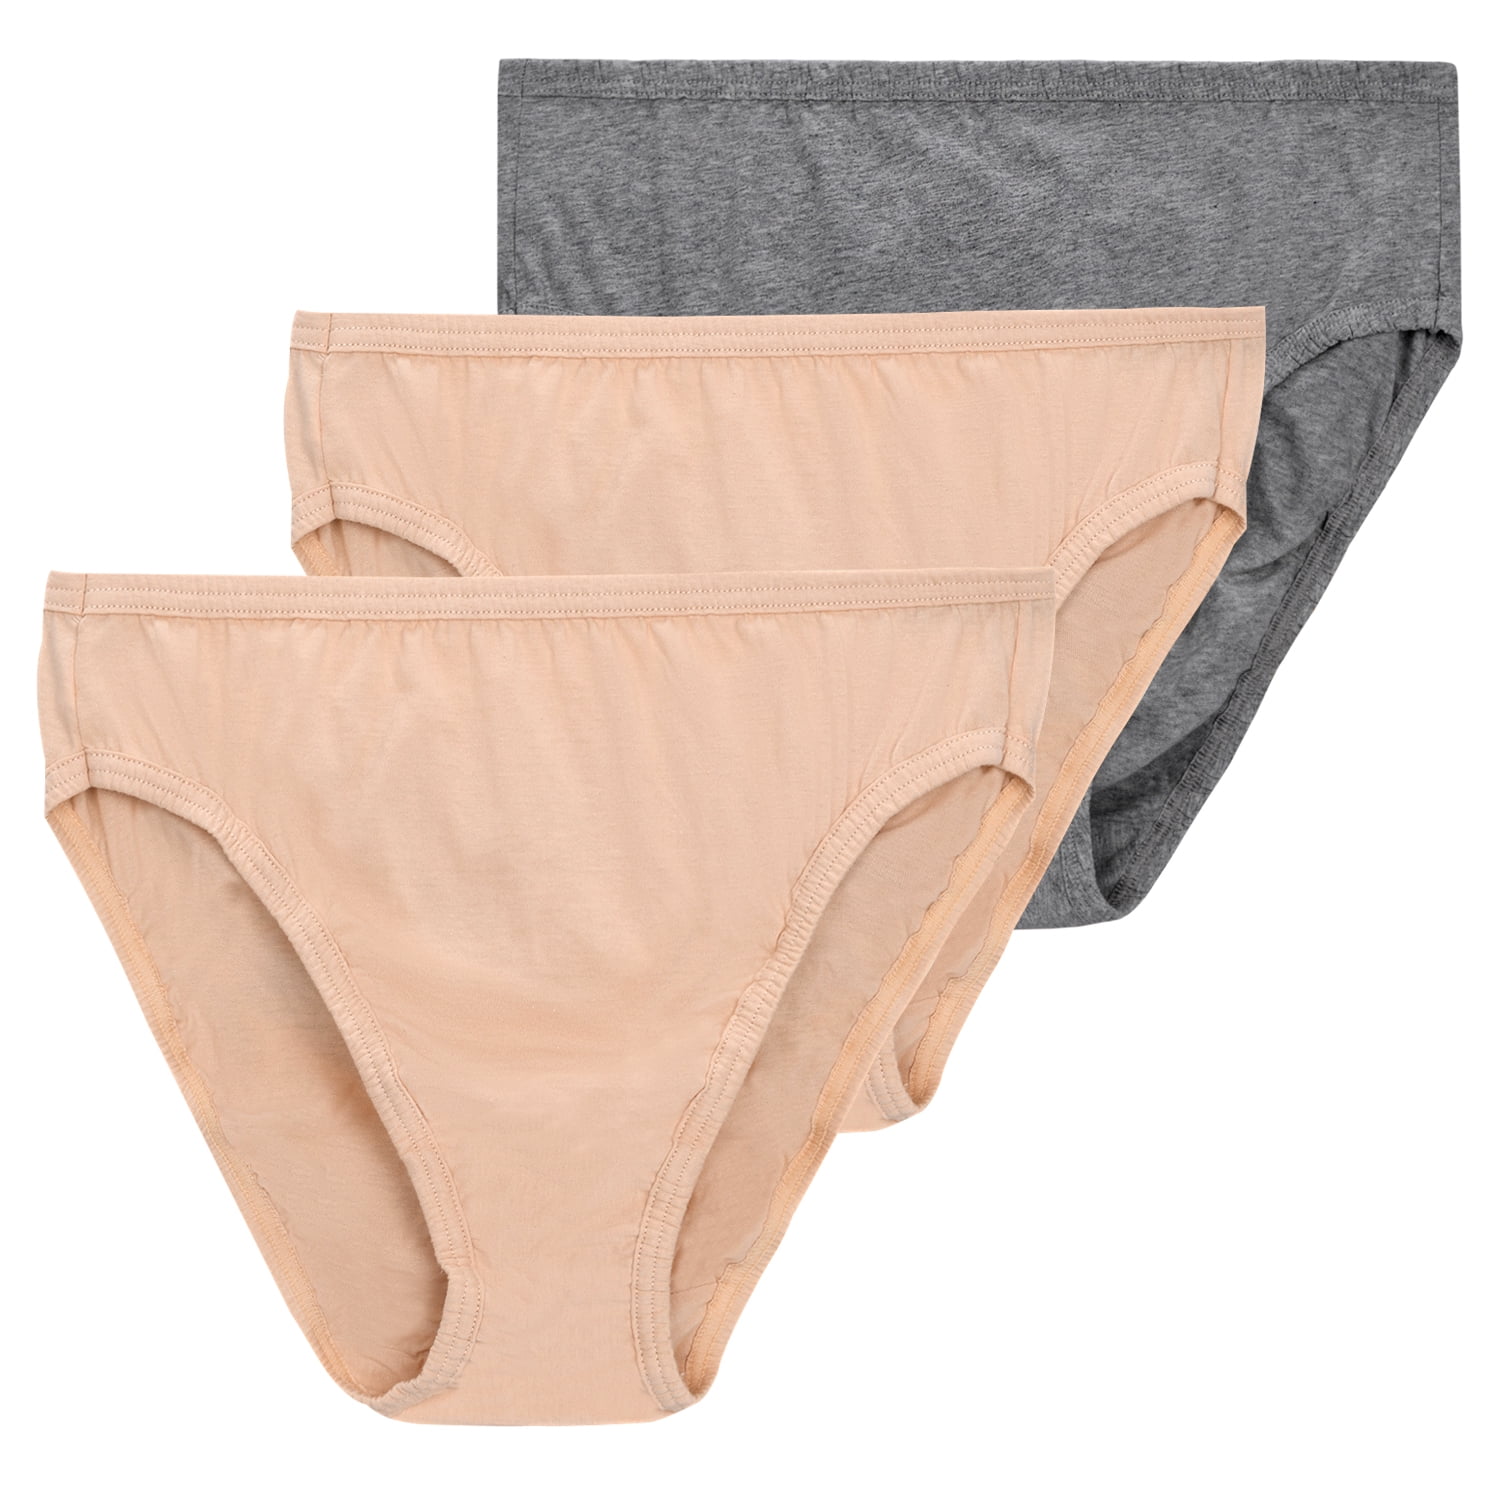 Buy VANILLAFUDGE Cotton padded Panties for Women's (Skin)_M, panty, panties, women panty